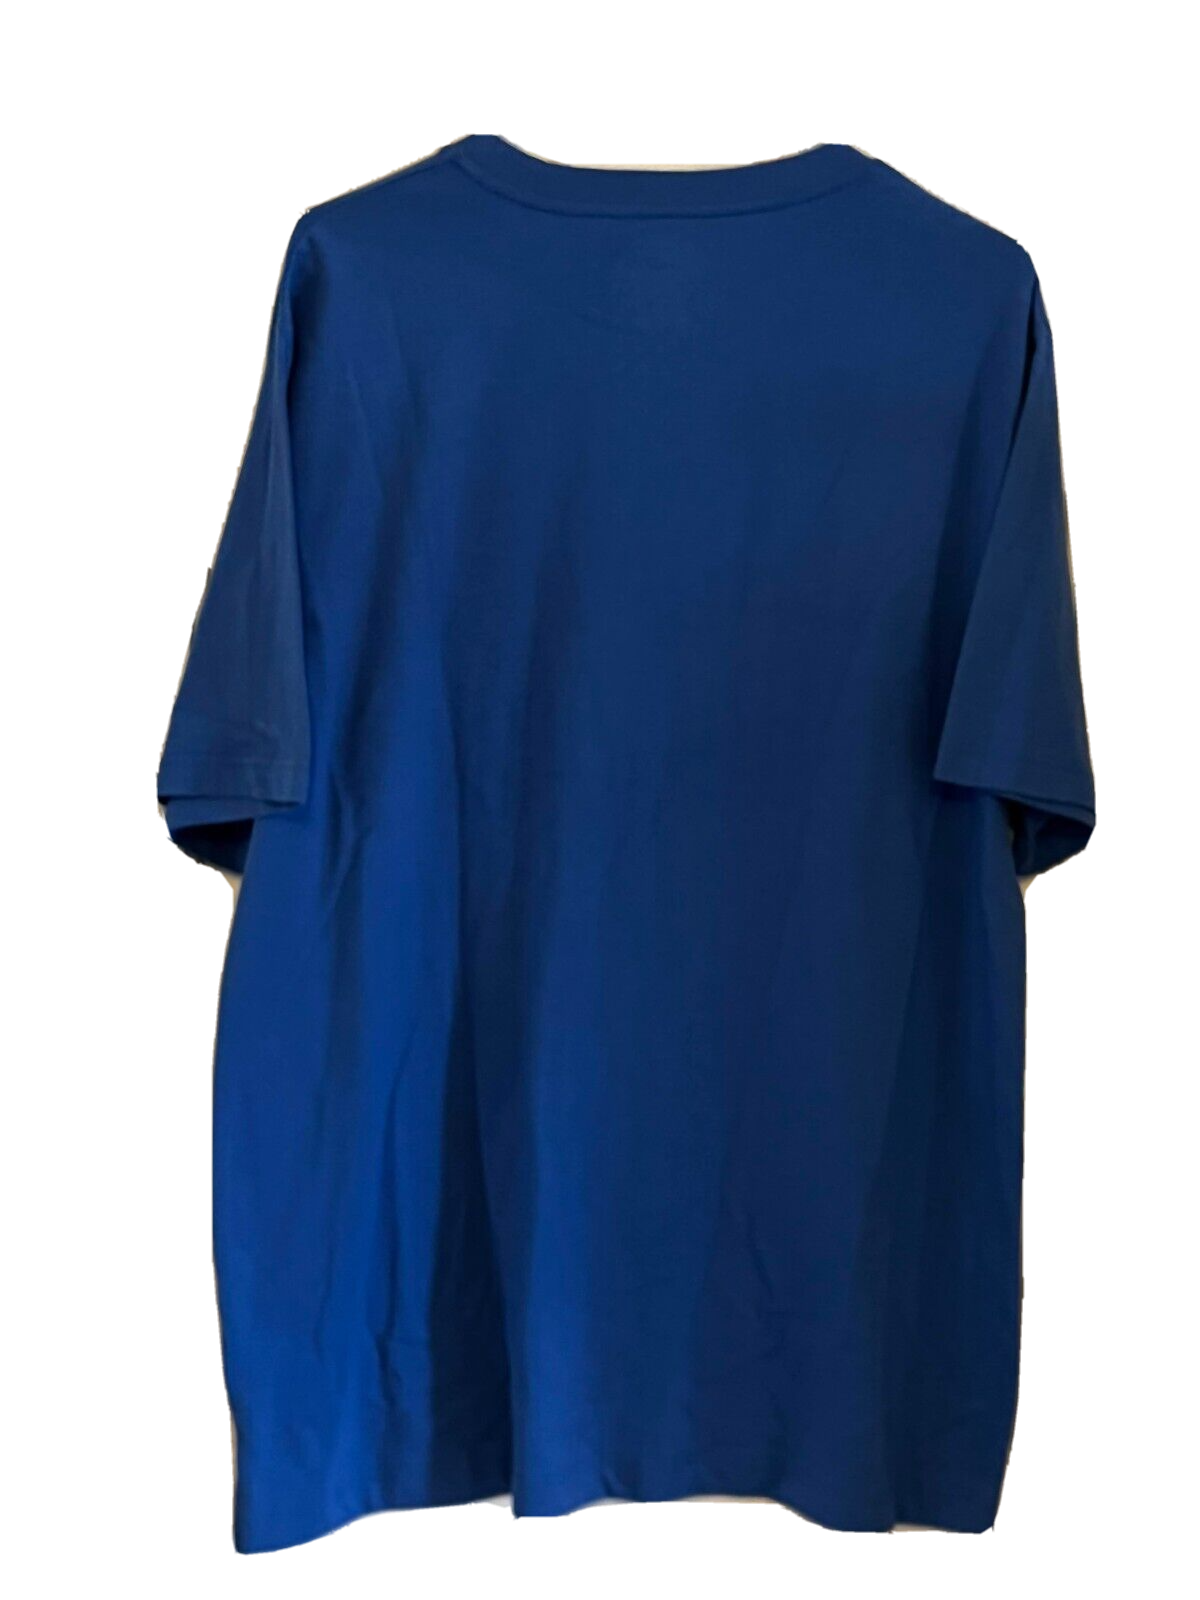 Men's Oklahoma City Thunder {Brand New} Blue Short Sleeve T-shirt by Fanatics - Size XL